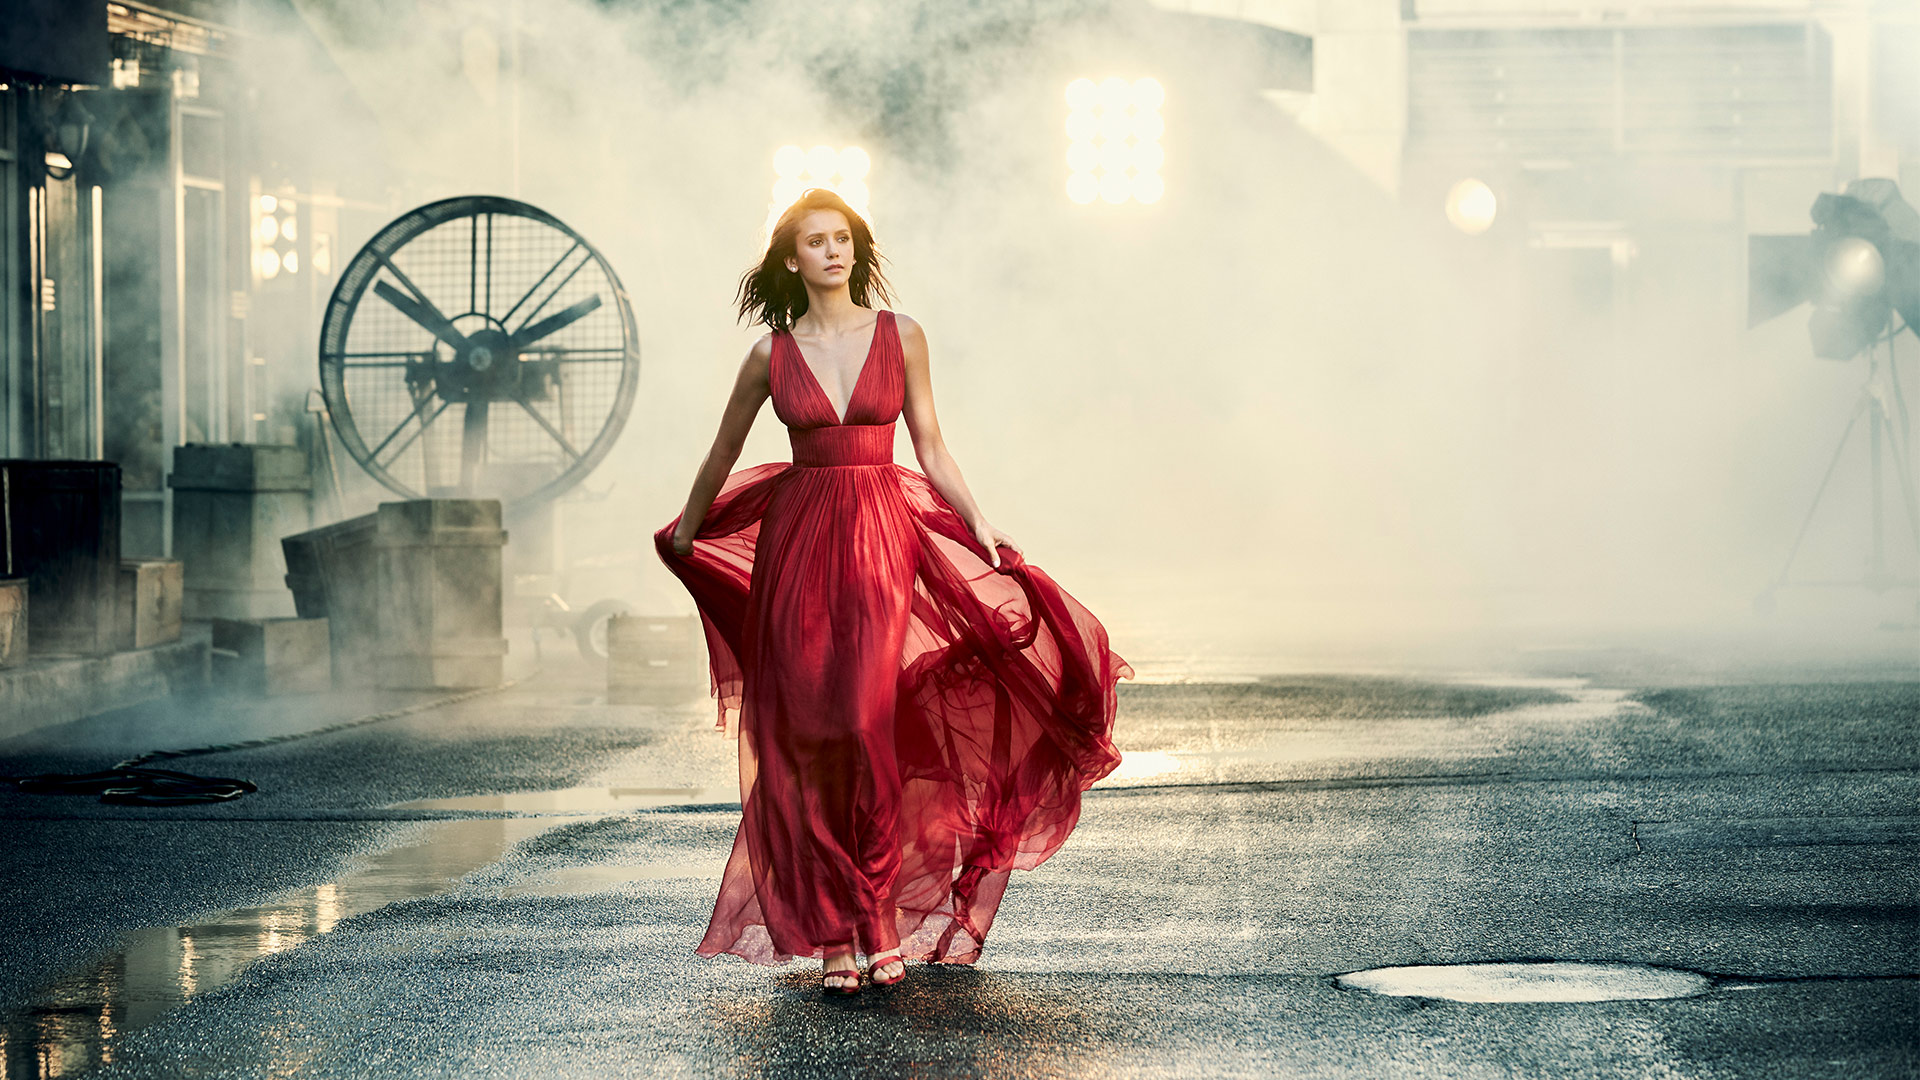 Nina Dobrev dazzles in this designer fashion photo shoot